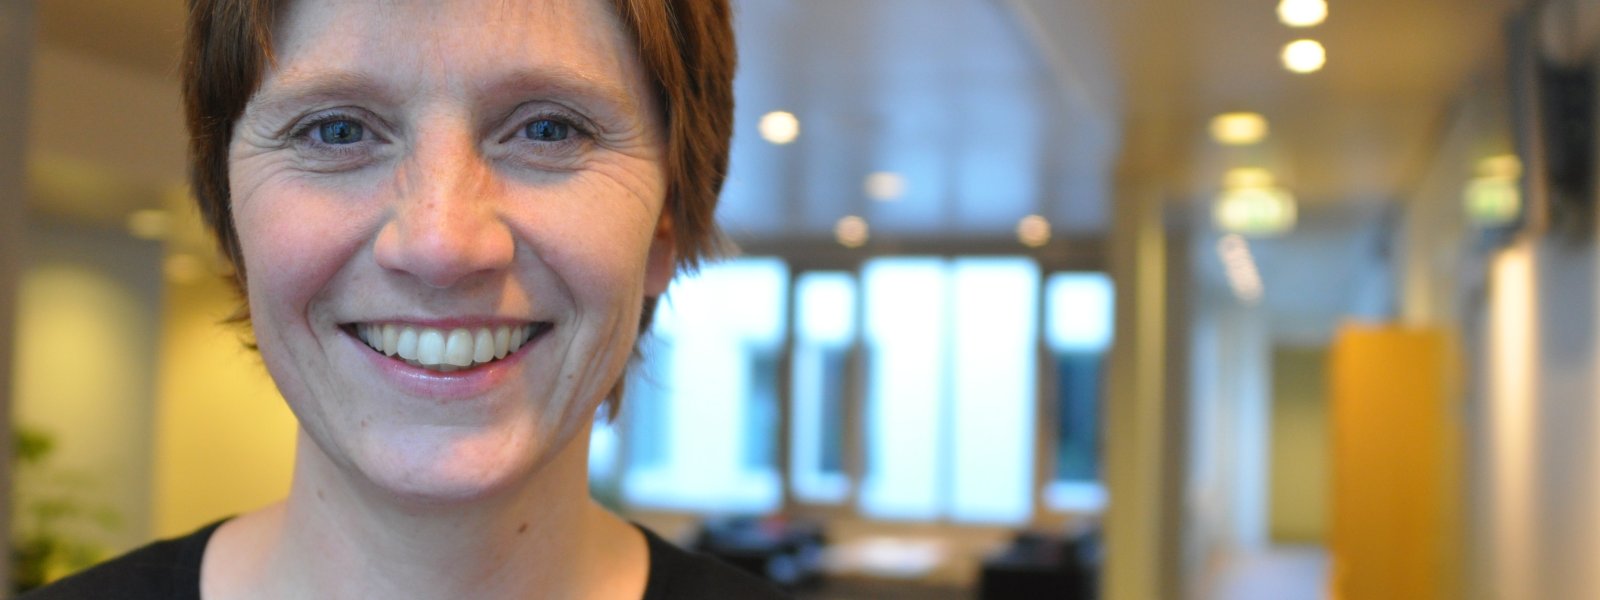 Kjersti Toppe er helsepolitisk talskvinne i Senterpartiet